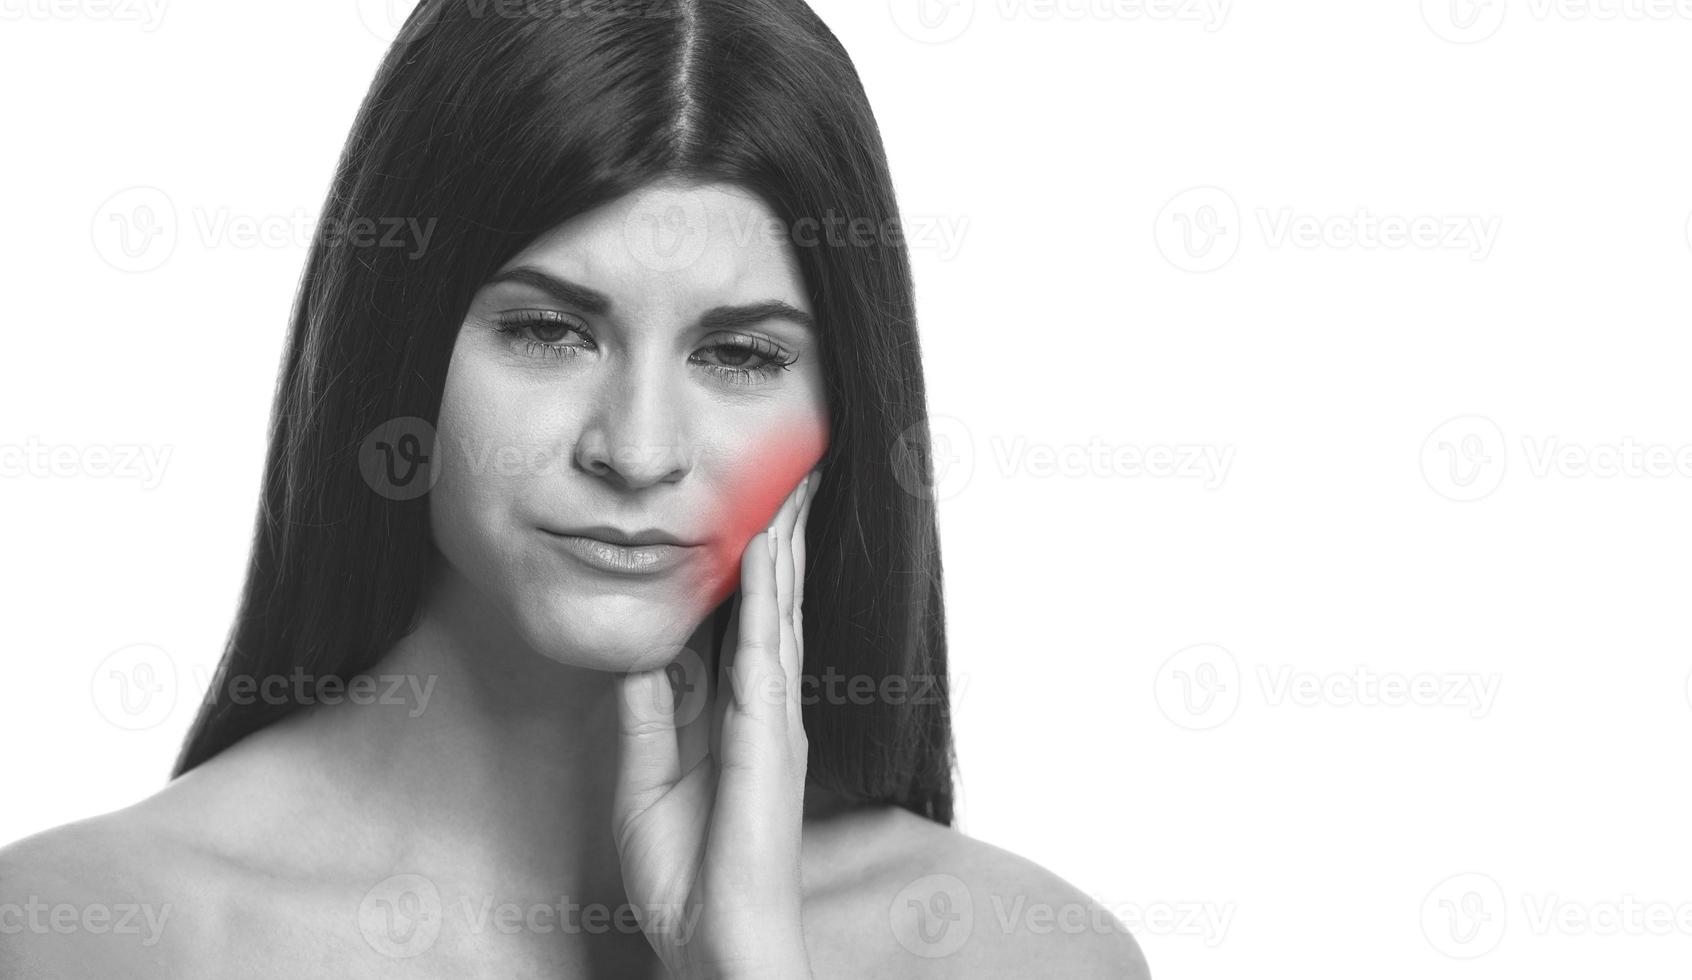 zwart en wit foto van een vrouw met kiespijn. kiespijn verlichten met rood.